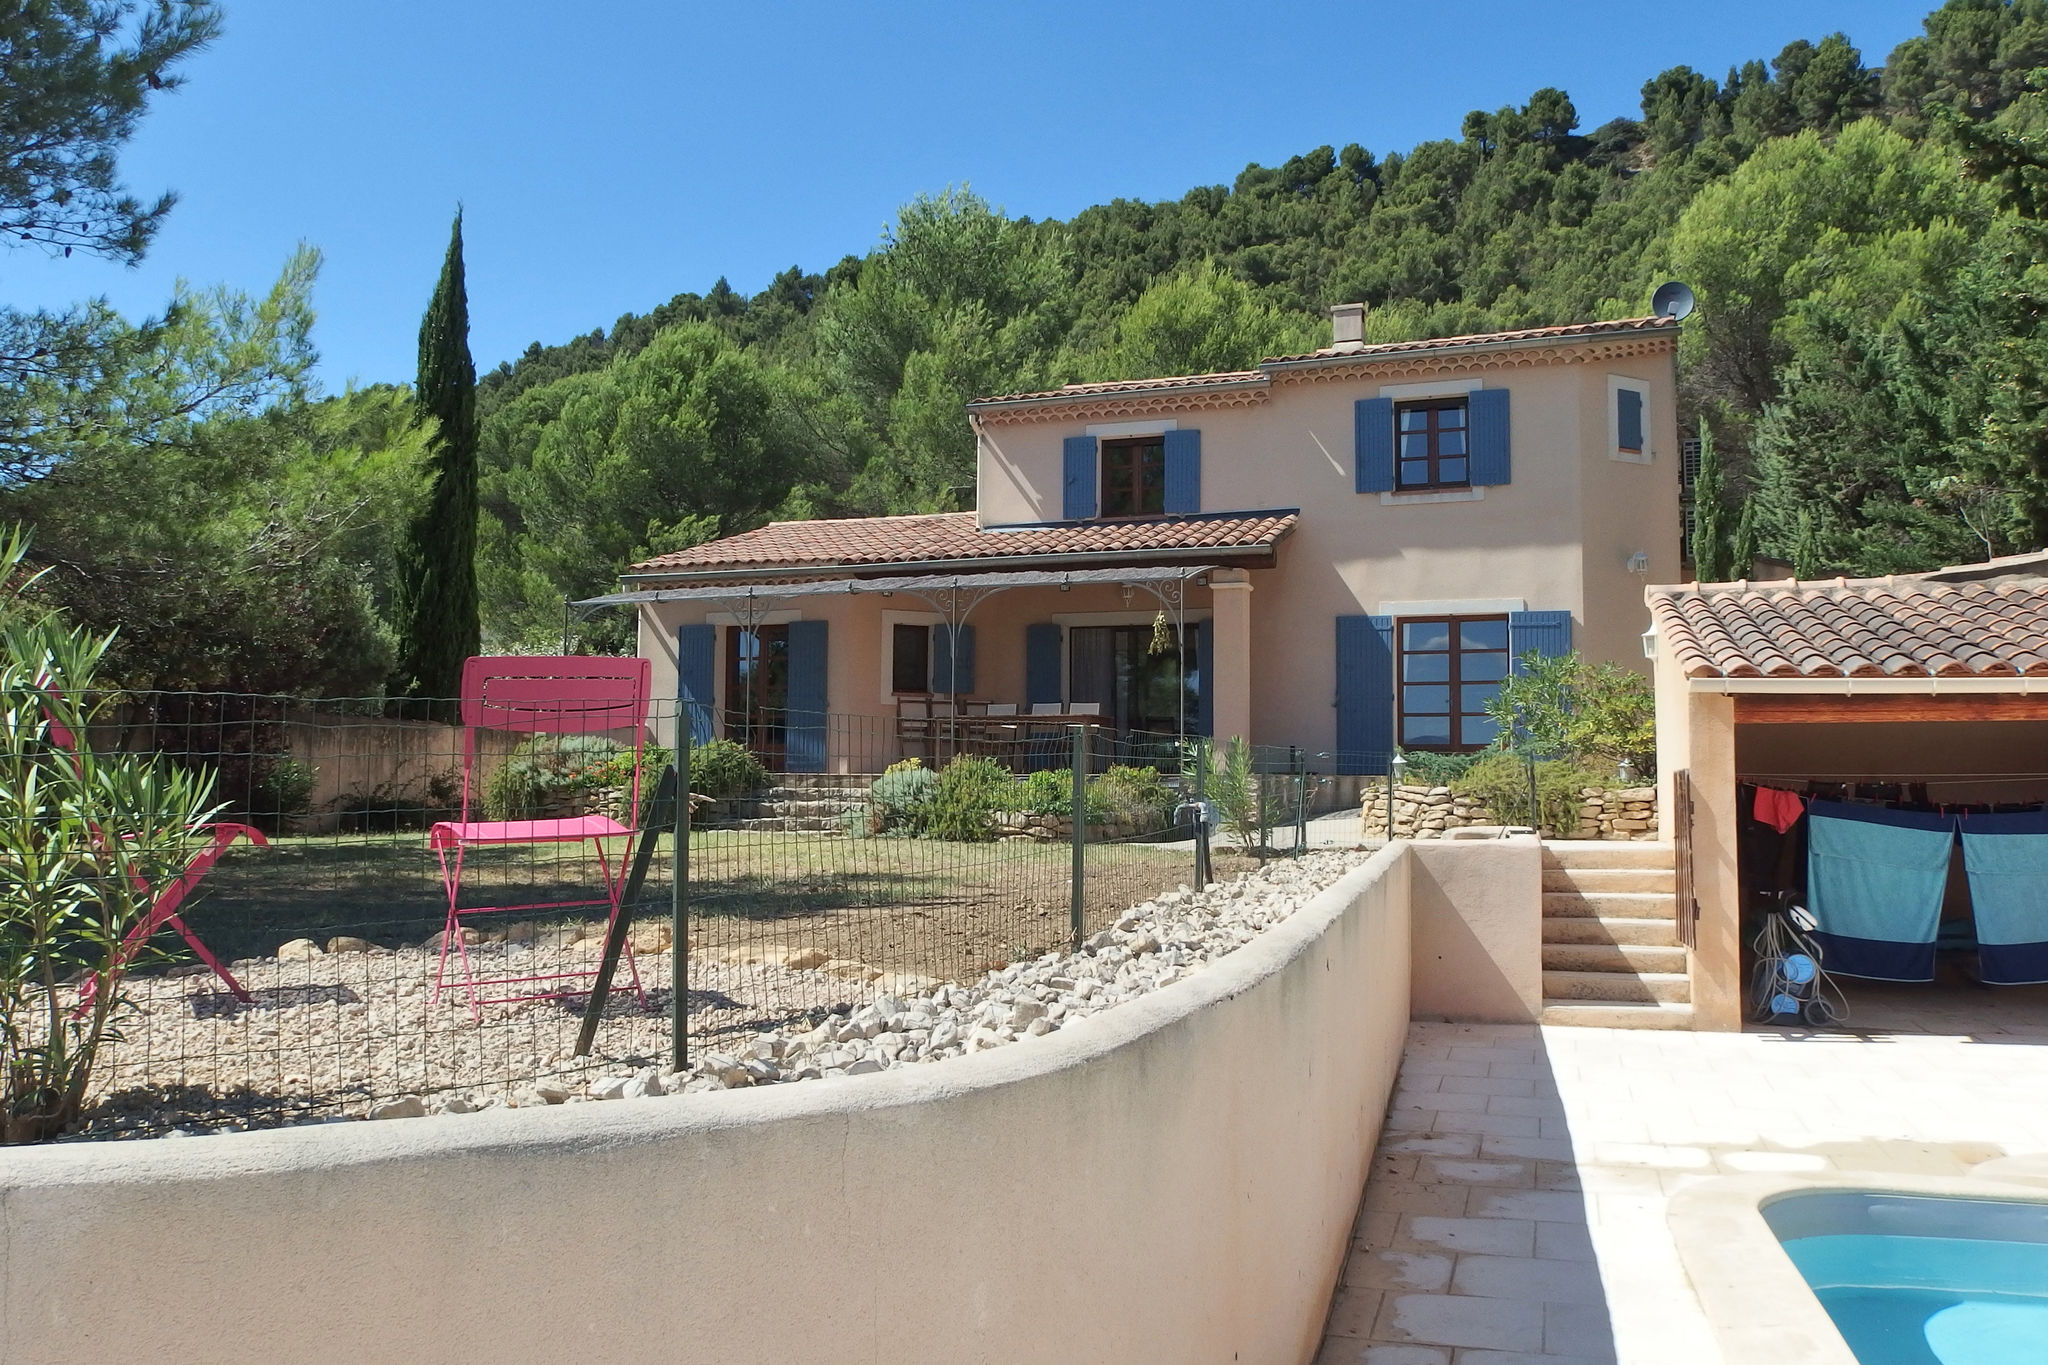 Villa moderne avec piscine privée chauffée près du Mont Ventoux.